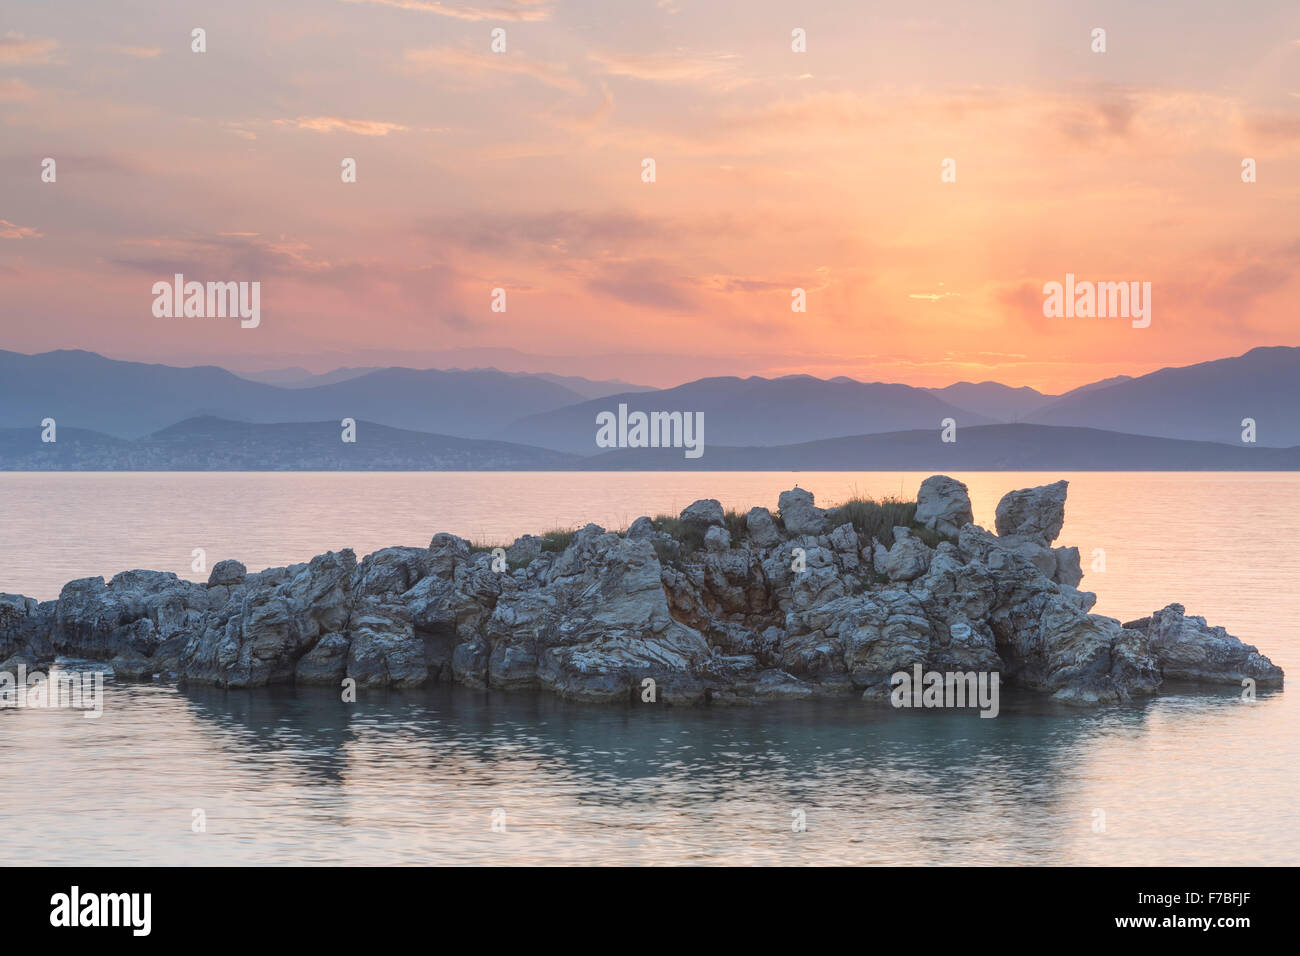 Felsen ragen aus dem Ionischen Meer in der Straße von Korfu in der Nähe von Kassiopi, Corfu. Die Sonne geht über Albanien. Stockfoto